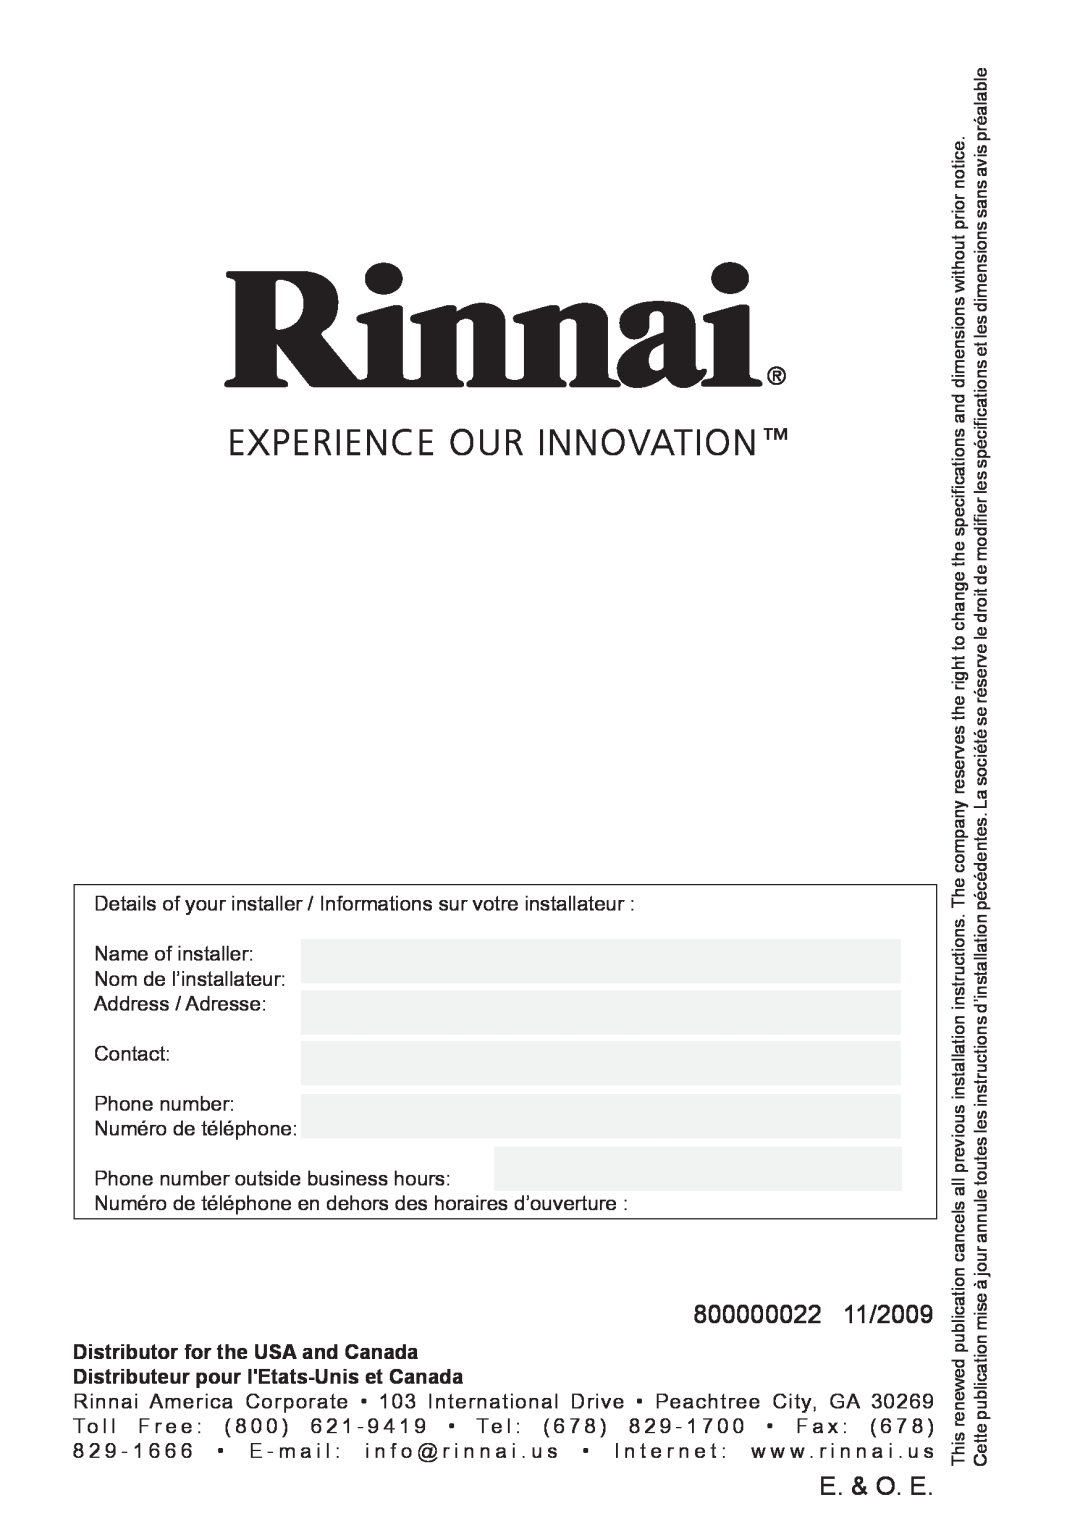 Rinnai Q85SP 800000022 11/2009, E. & O. E, Distributor for the USA and Canada, Distributeur pour lEtats-Uniset Canada 